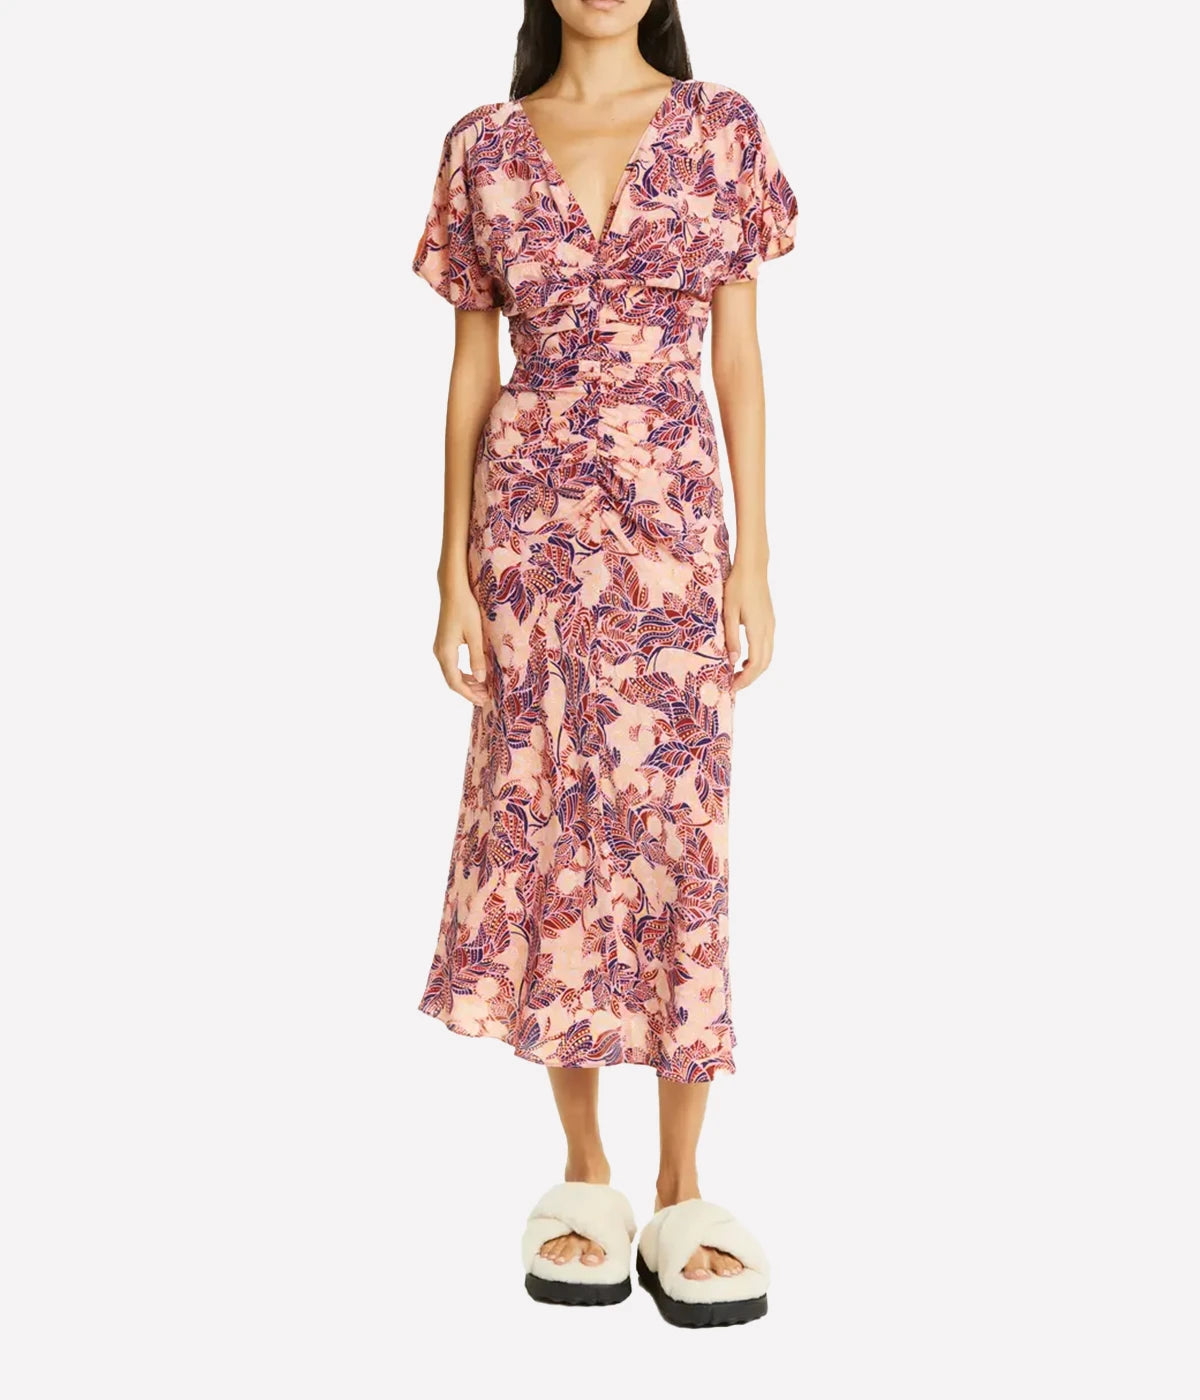 Elodie Dress in Grapefruit & Sedona Multi